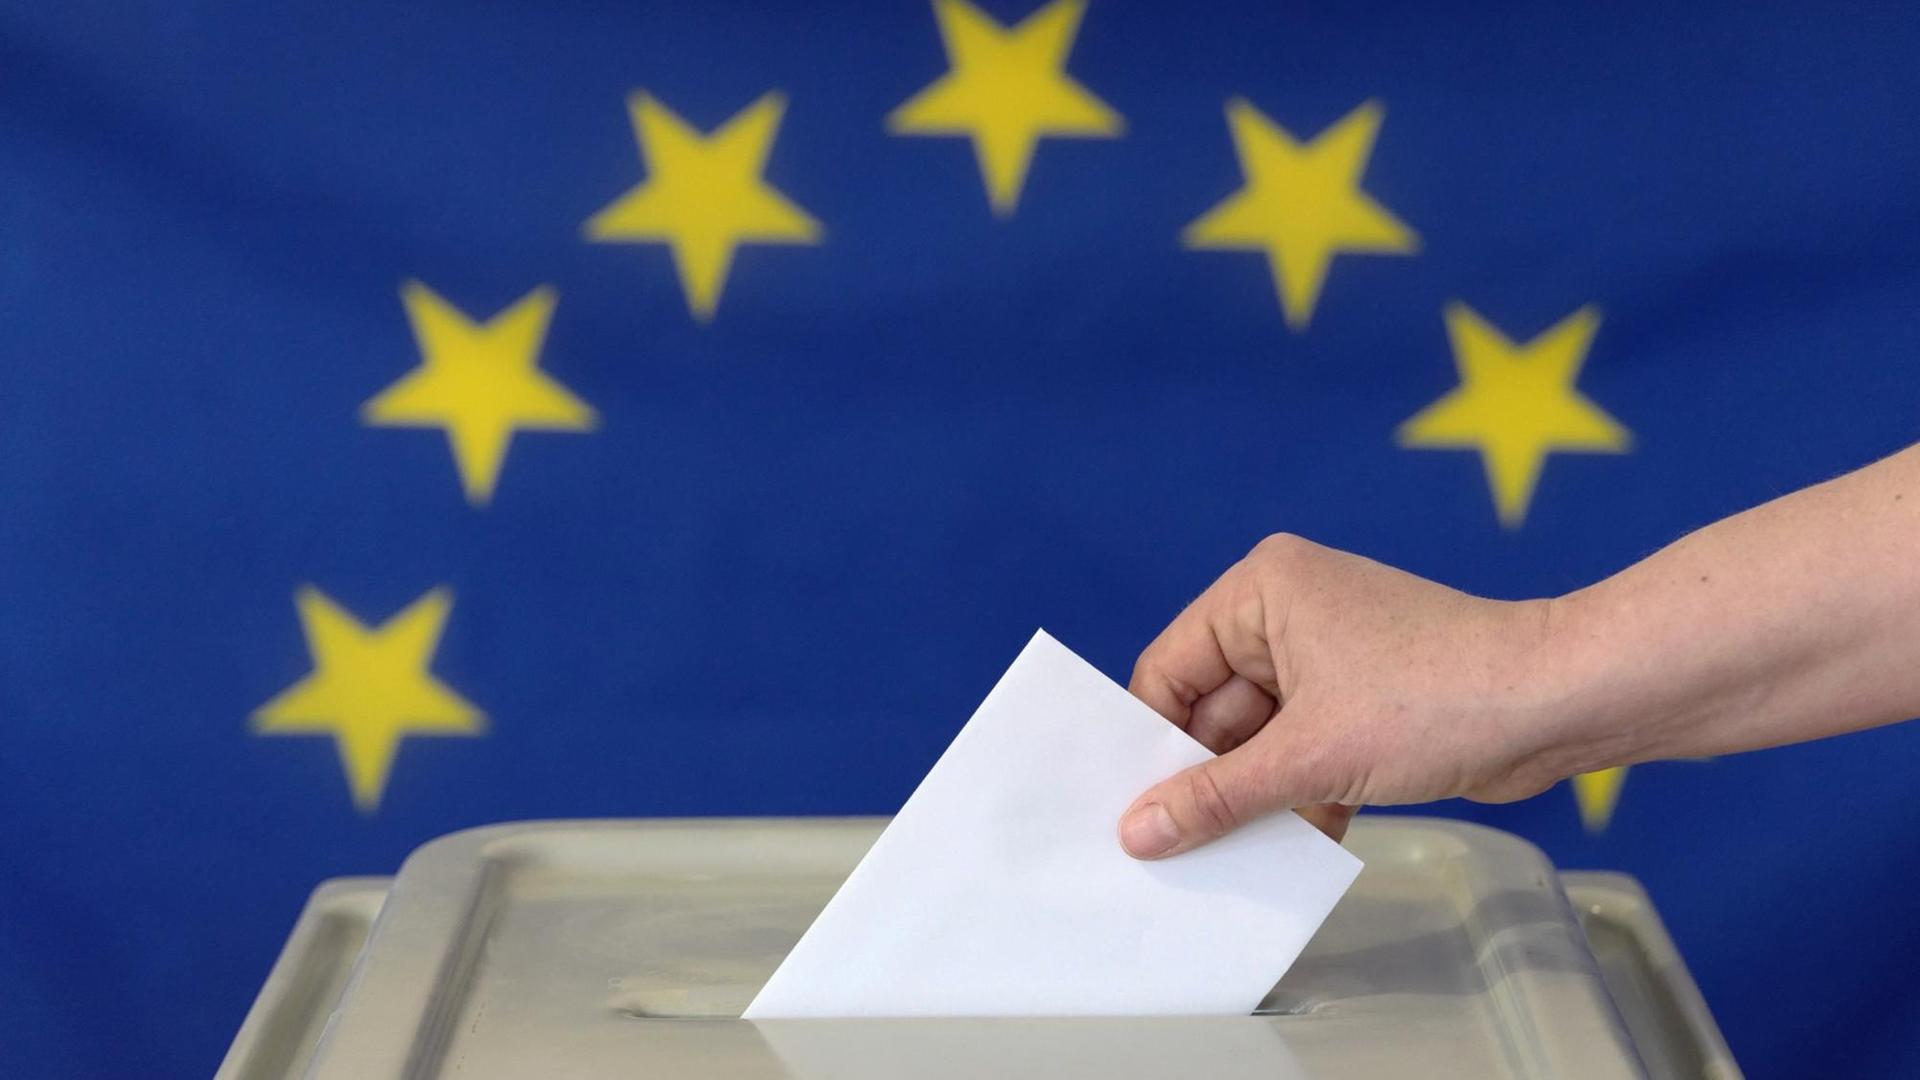 Eine Hand steckt einen Umschlag in eine Wahl-Urne vor der Europa-Fahne.